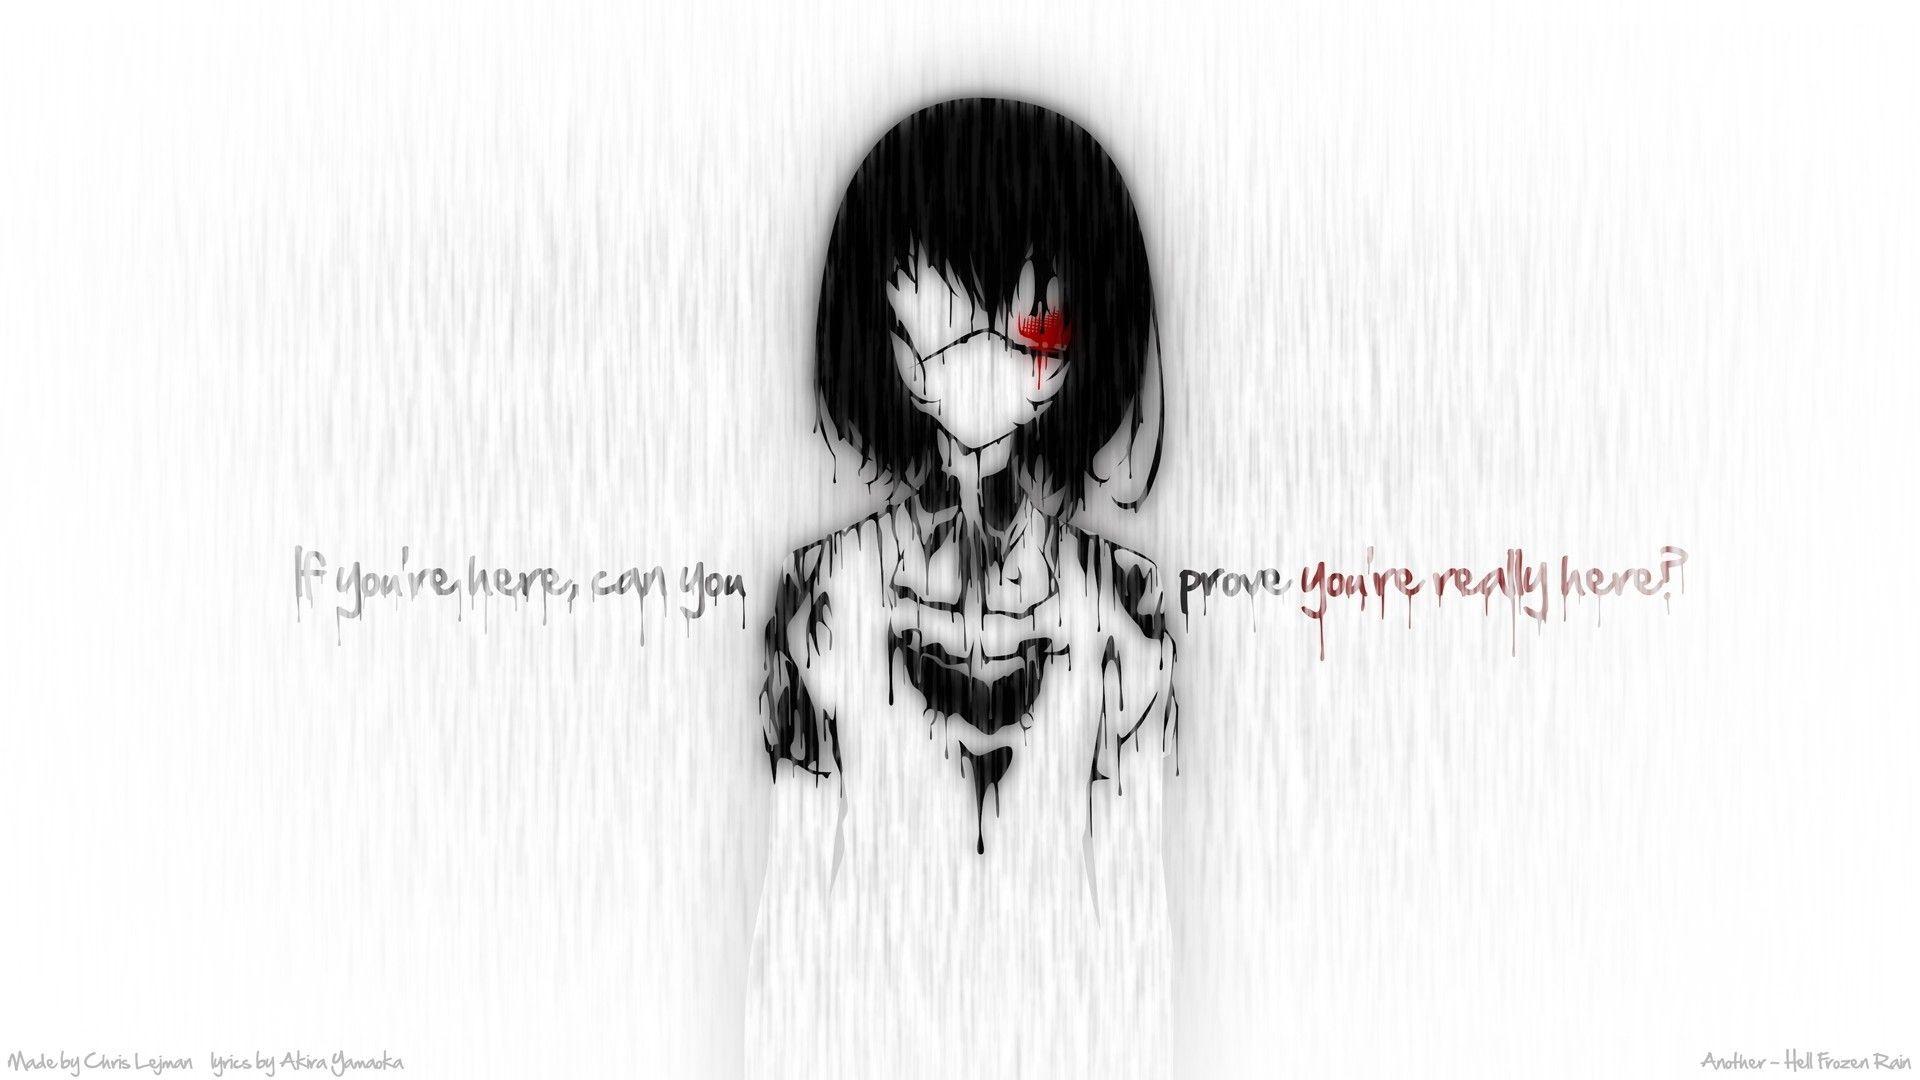 Creepy rain blood quotes eyepatch typography anime anime